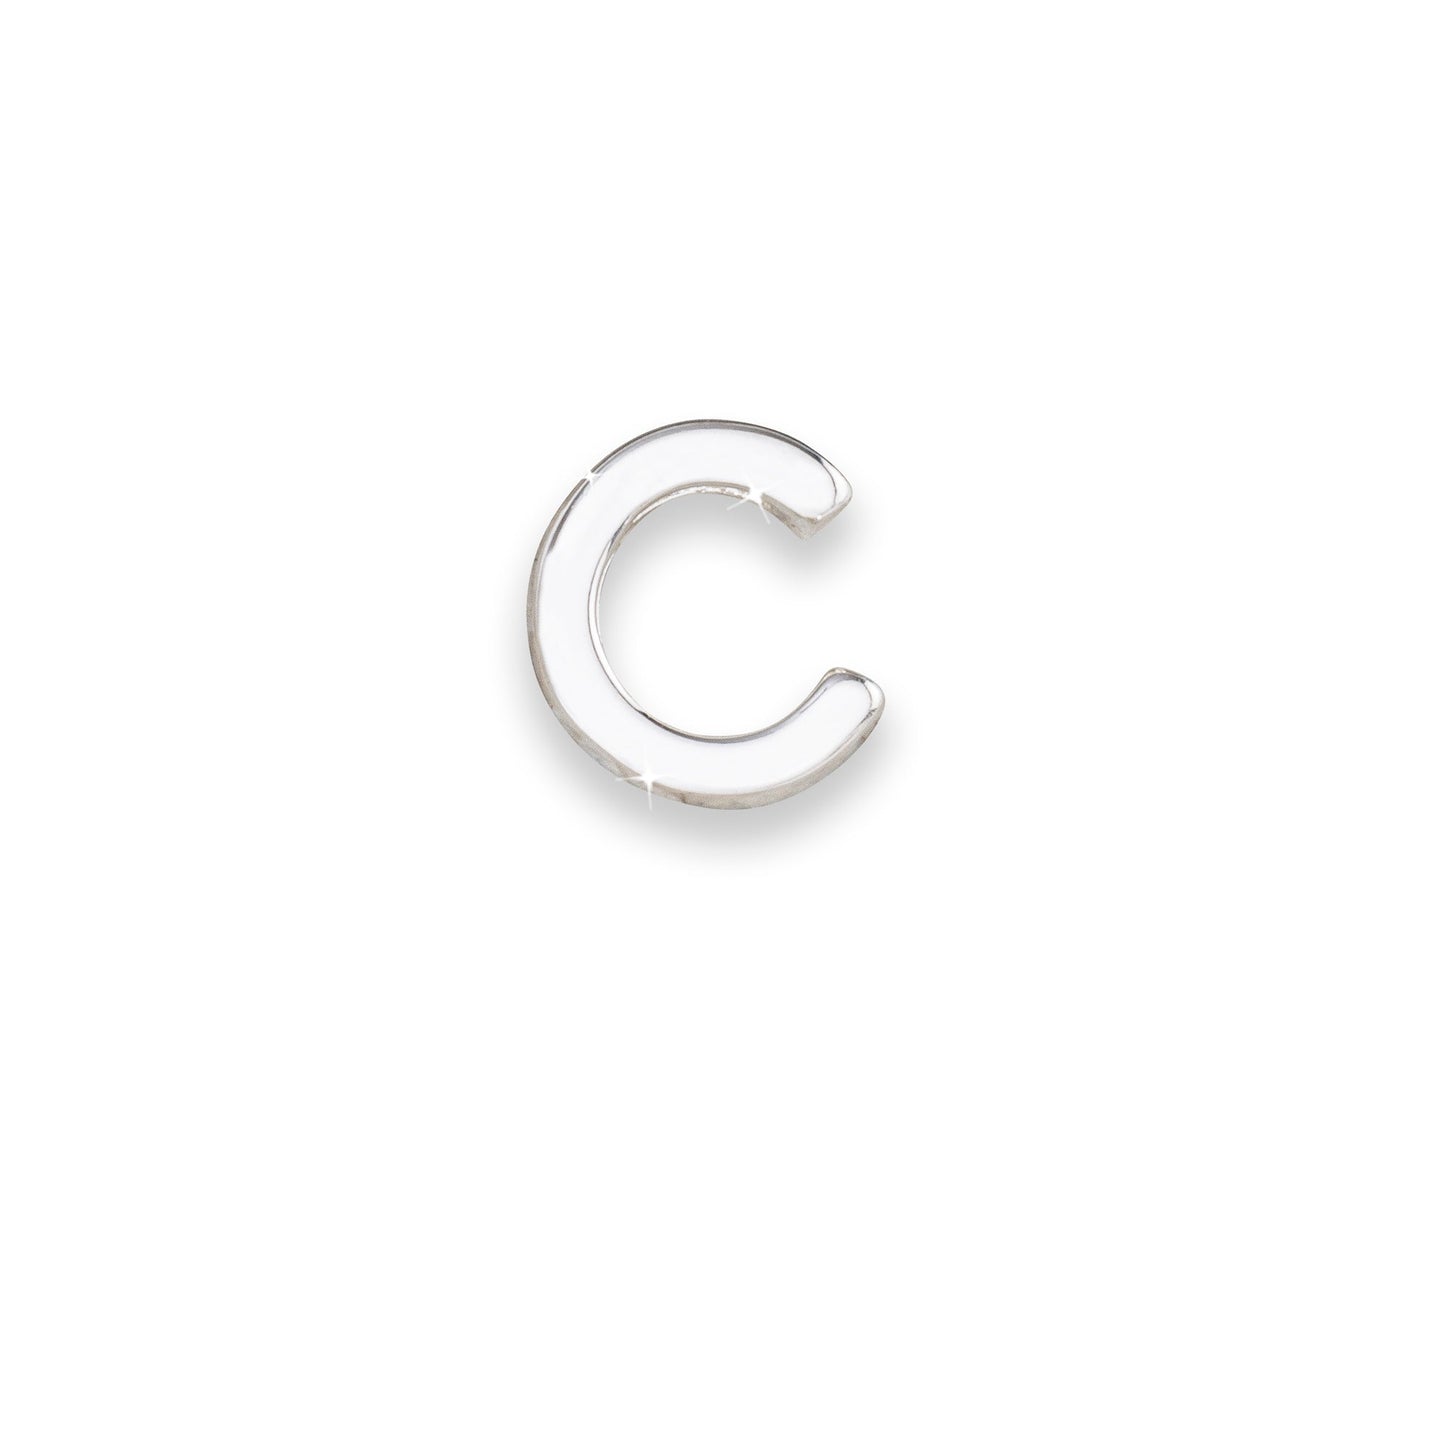 Silver letter C monogram charm for necklaces & bracelets